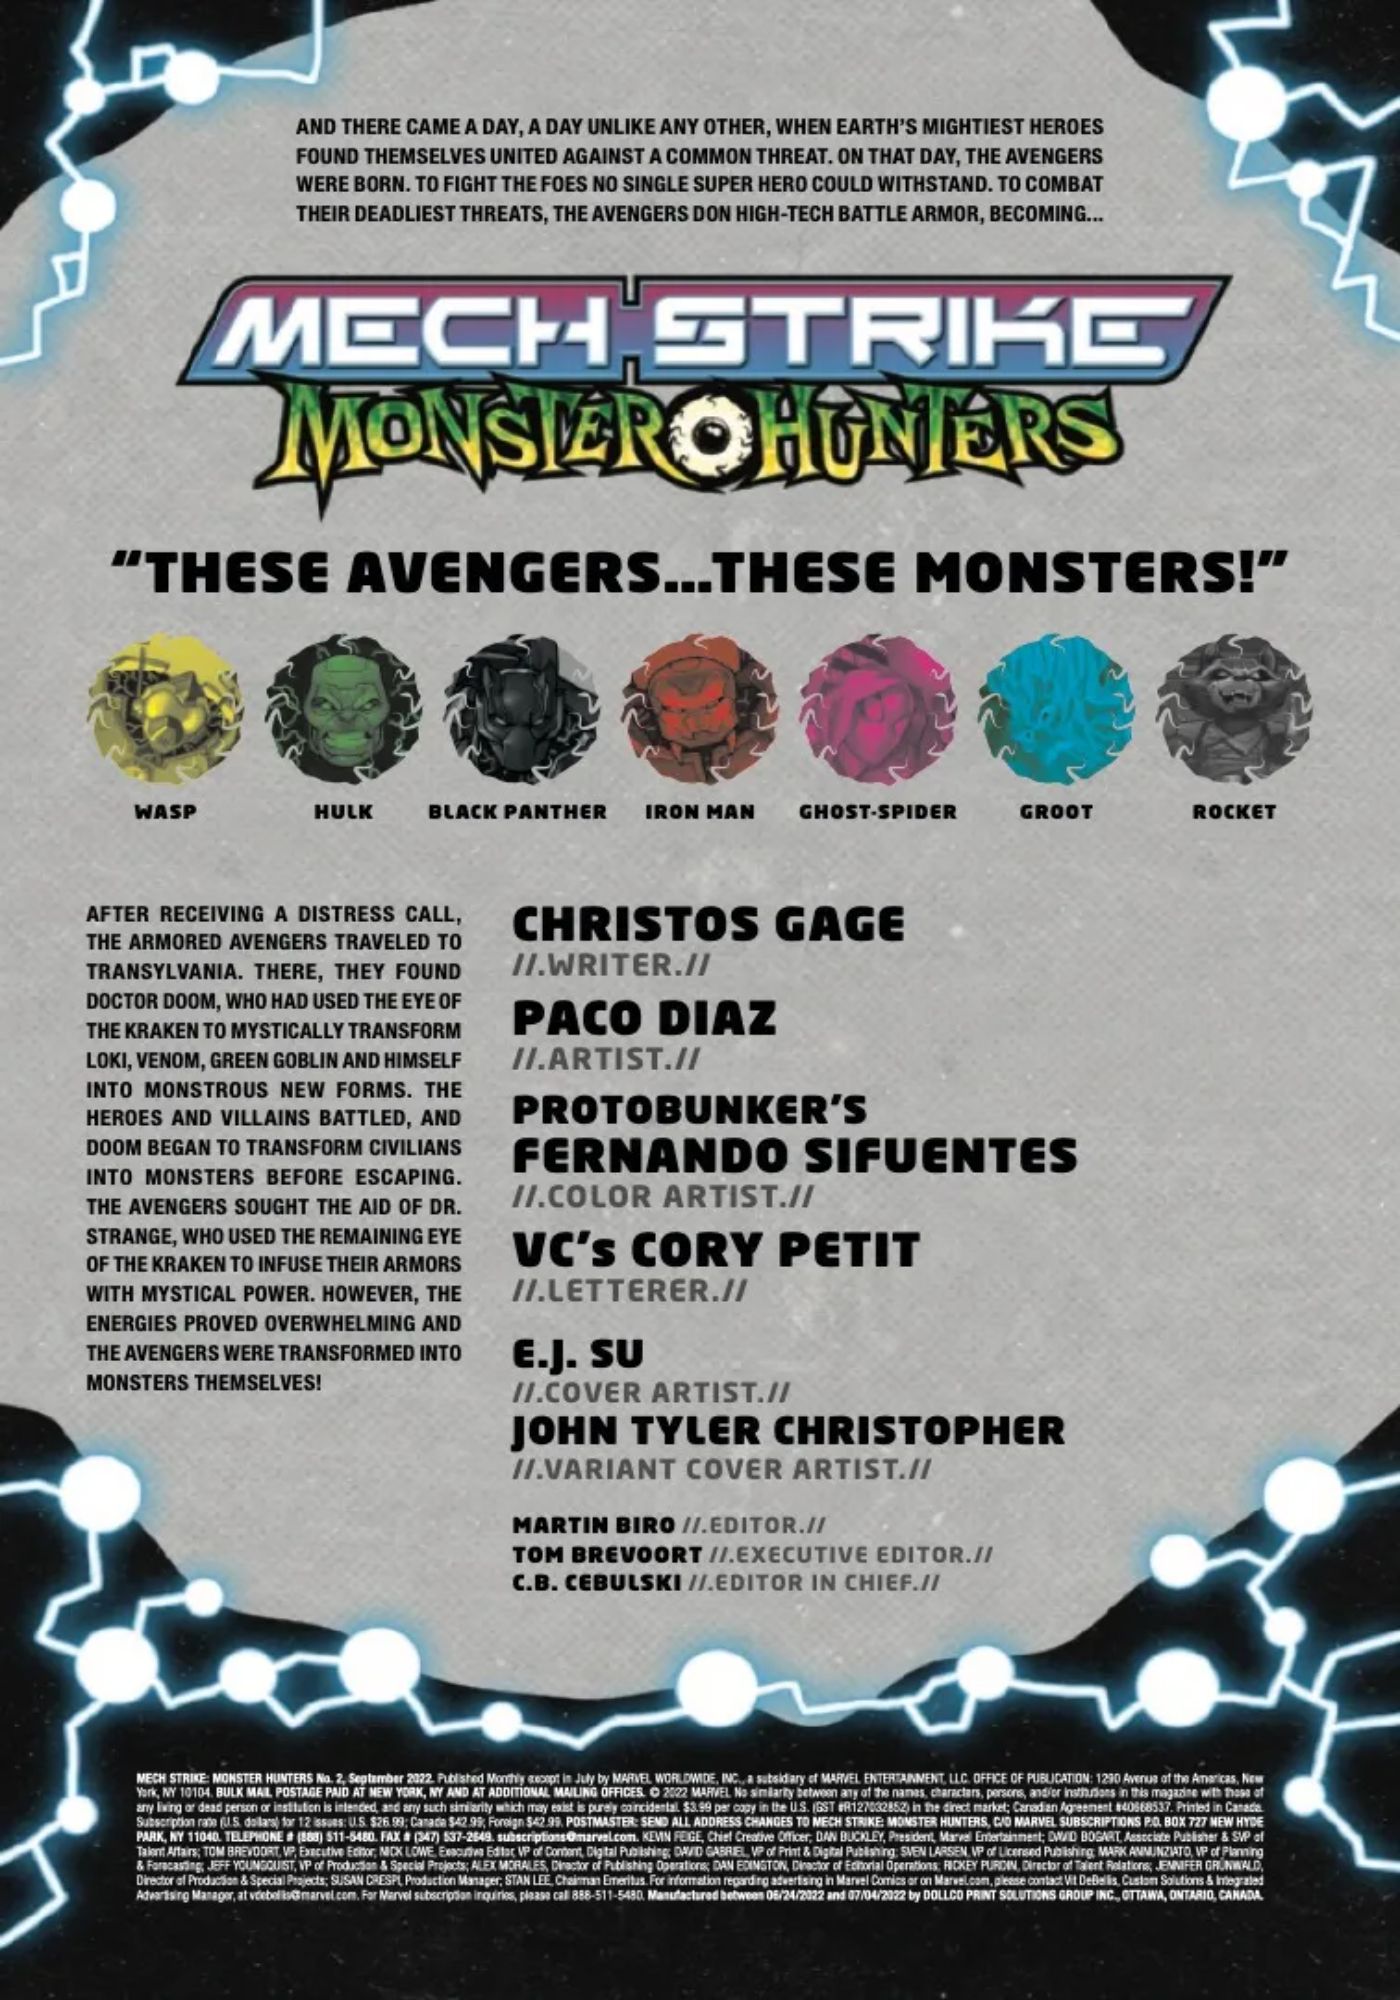 Hulk Monster Hunters